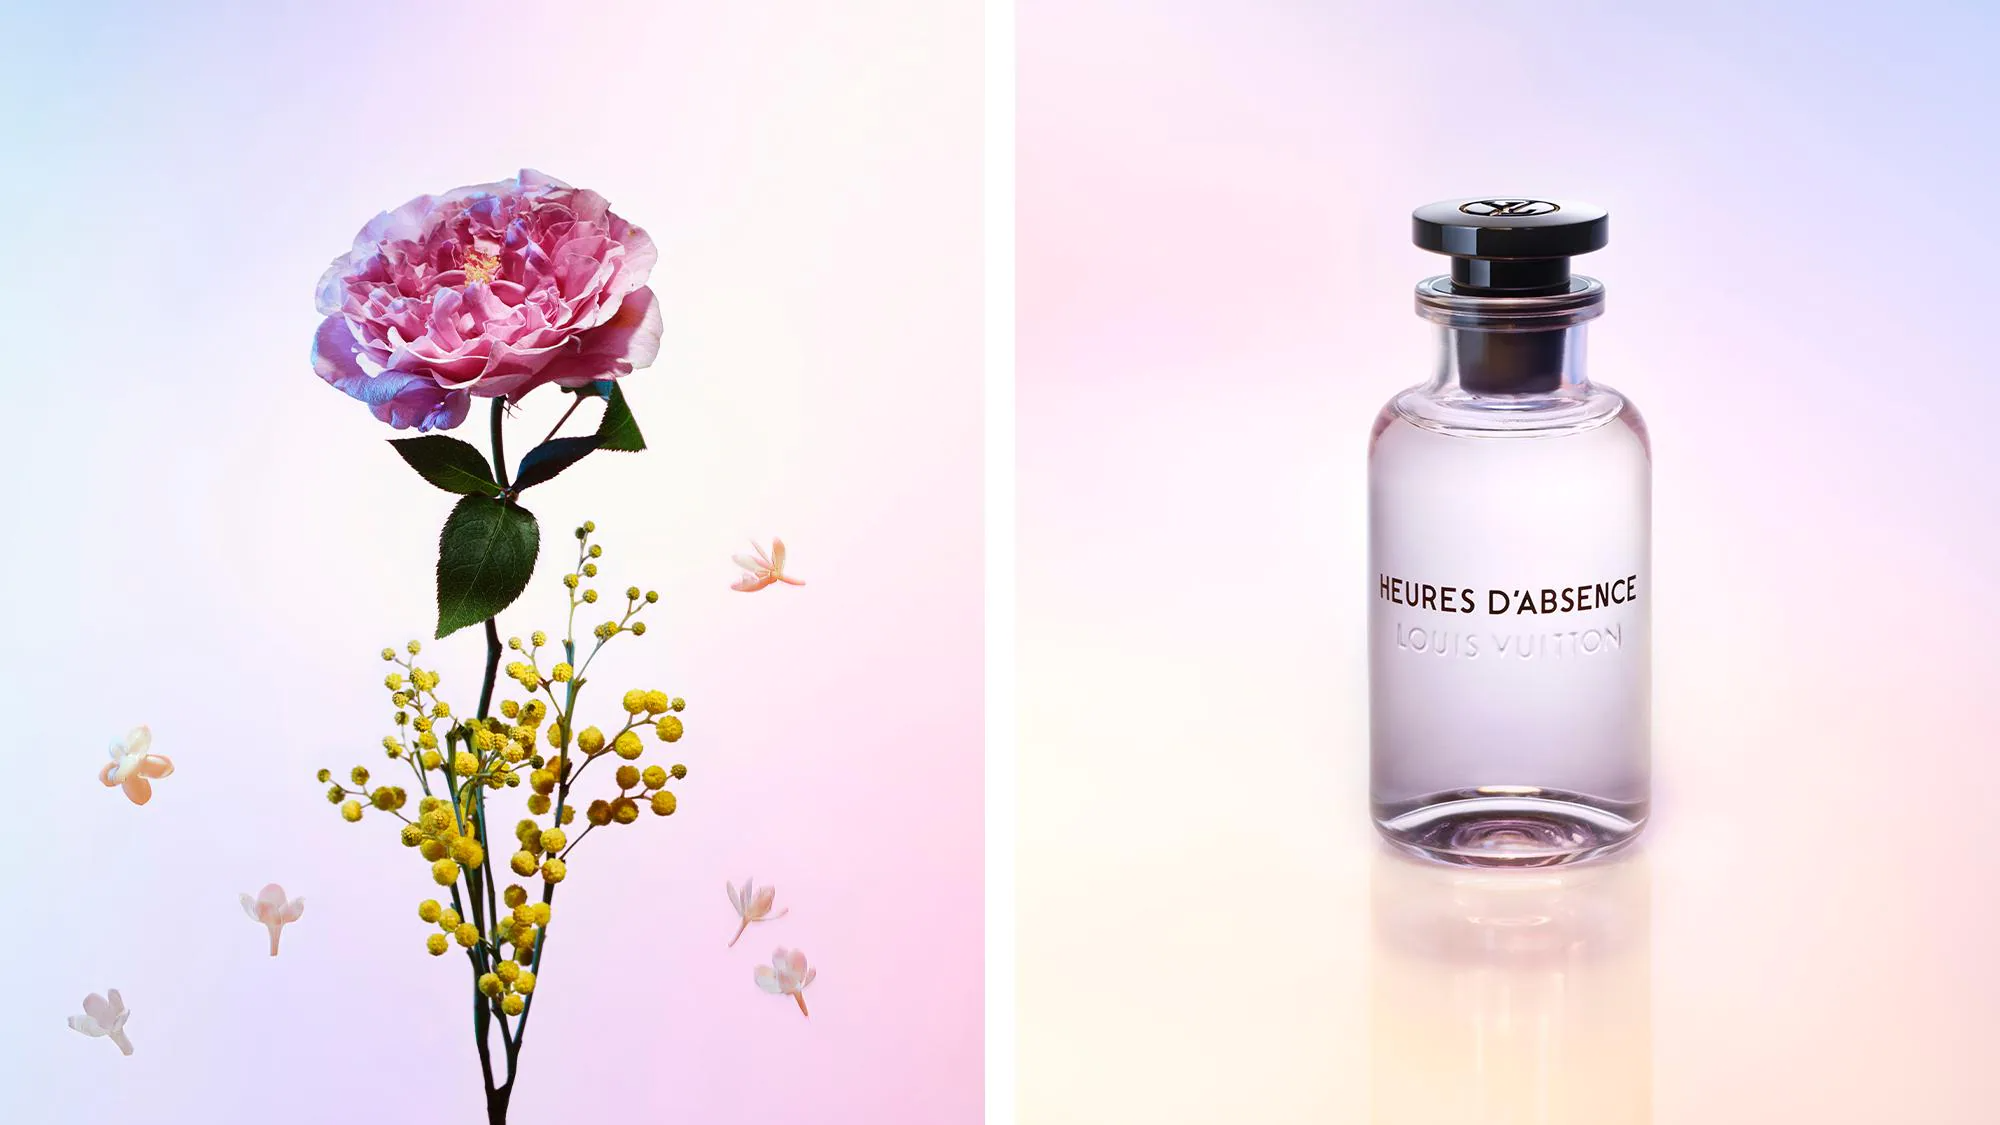 Chiết 10ml] Louis Vuitton Rose des Vents Eau de Parfum